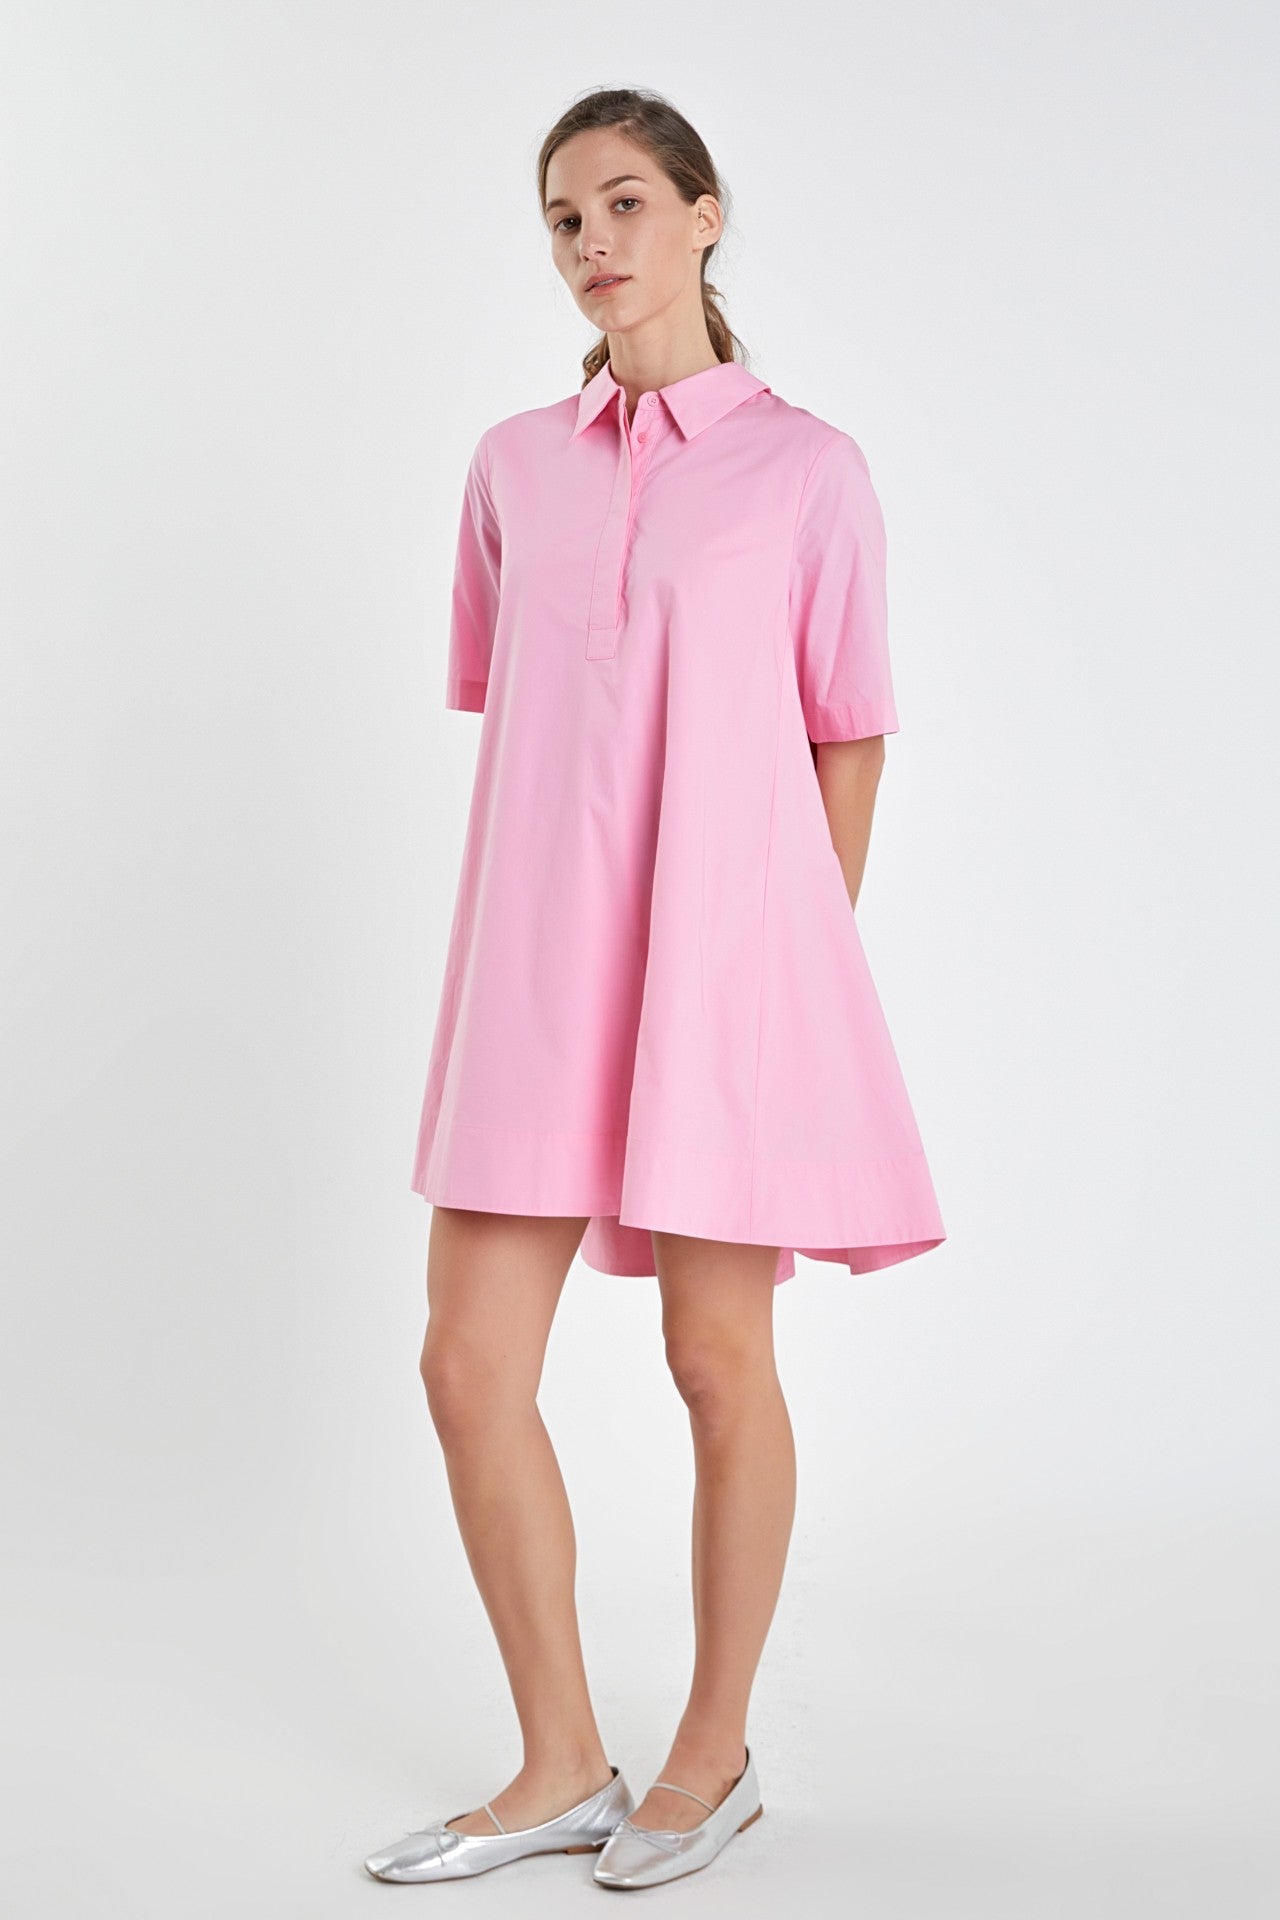 A-line short sleeve shirt dress